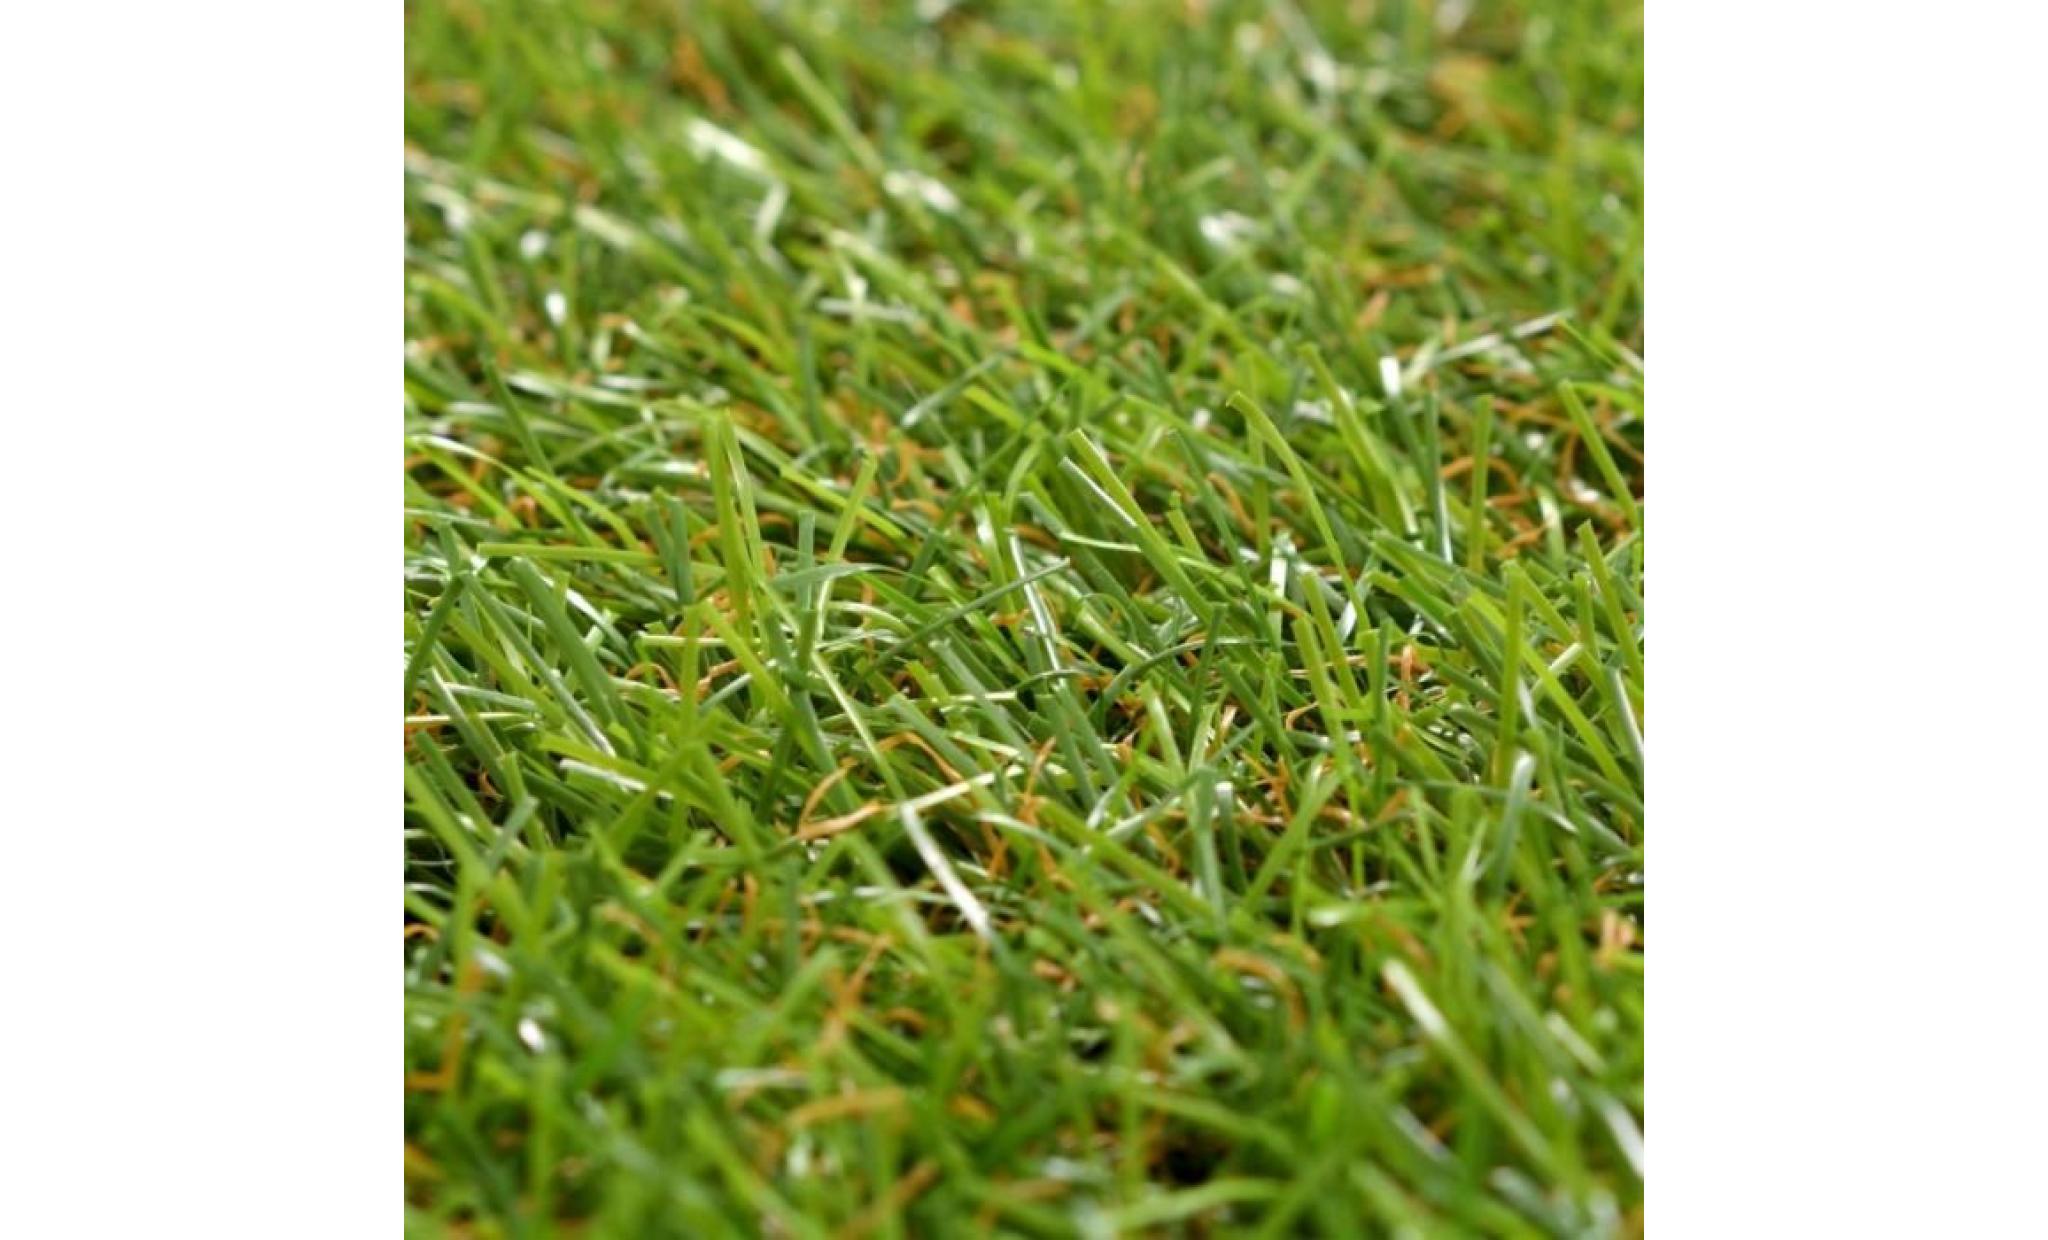 r52 ces dalles de gazon artificiel d'une hauteur de 20 mm peuvent etre utilisees pour creer une pelouse non seulement ex